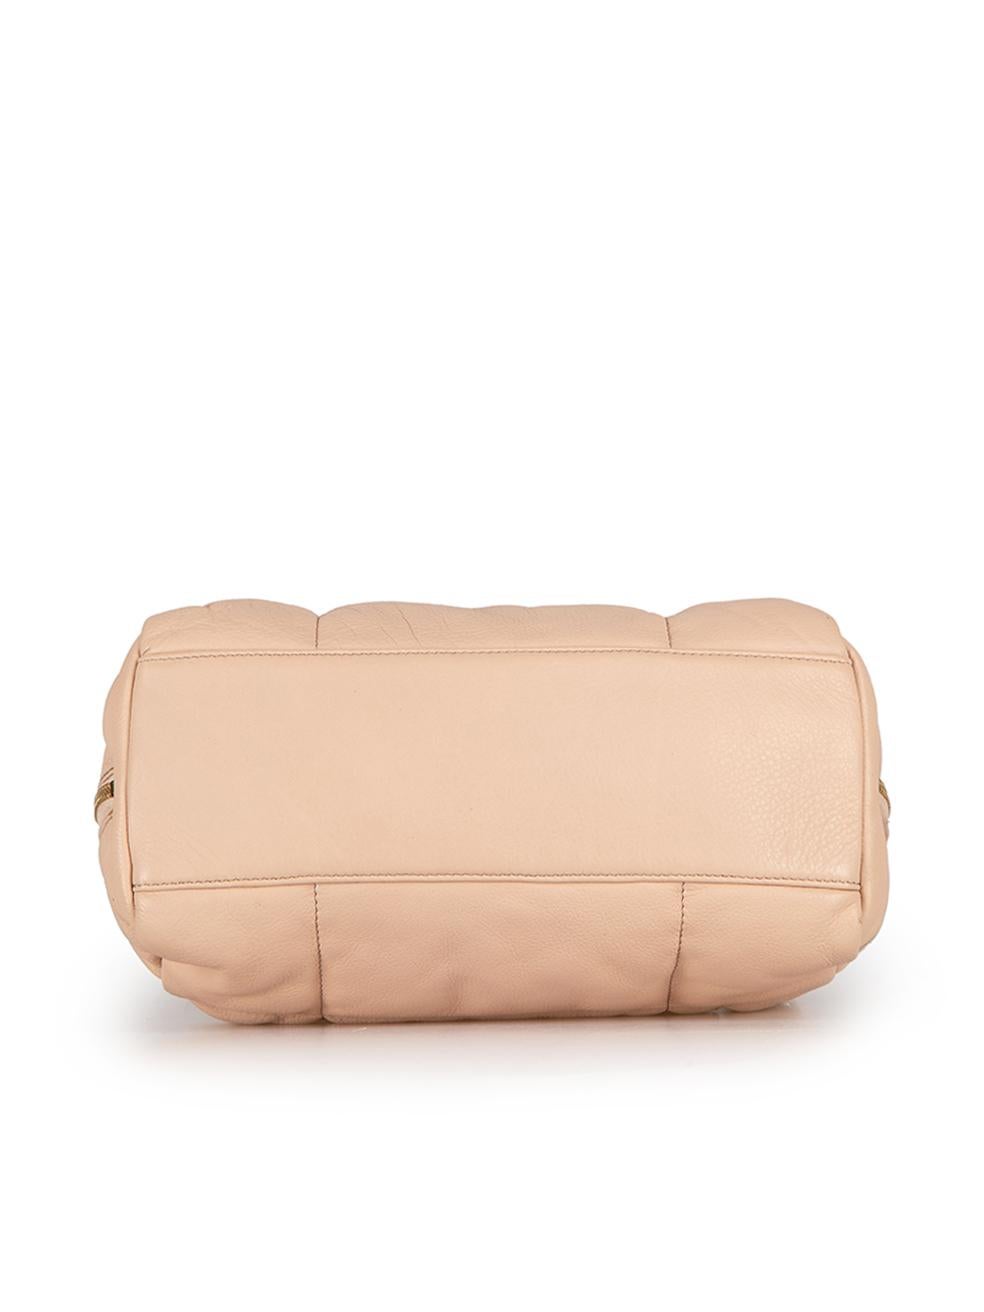 Dries Van Noten Women's Pink Quilted Leather Top-Handle Bag 1